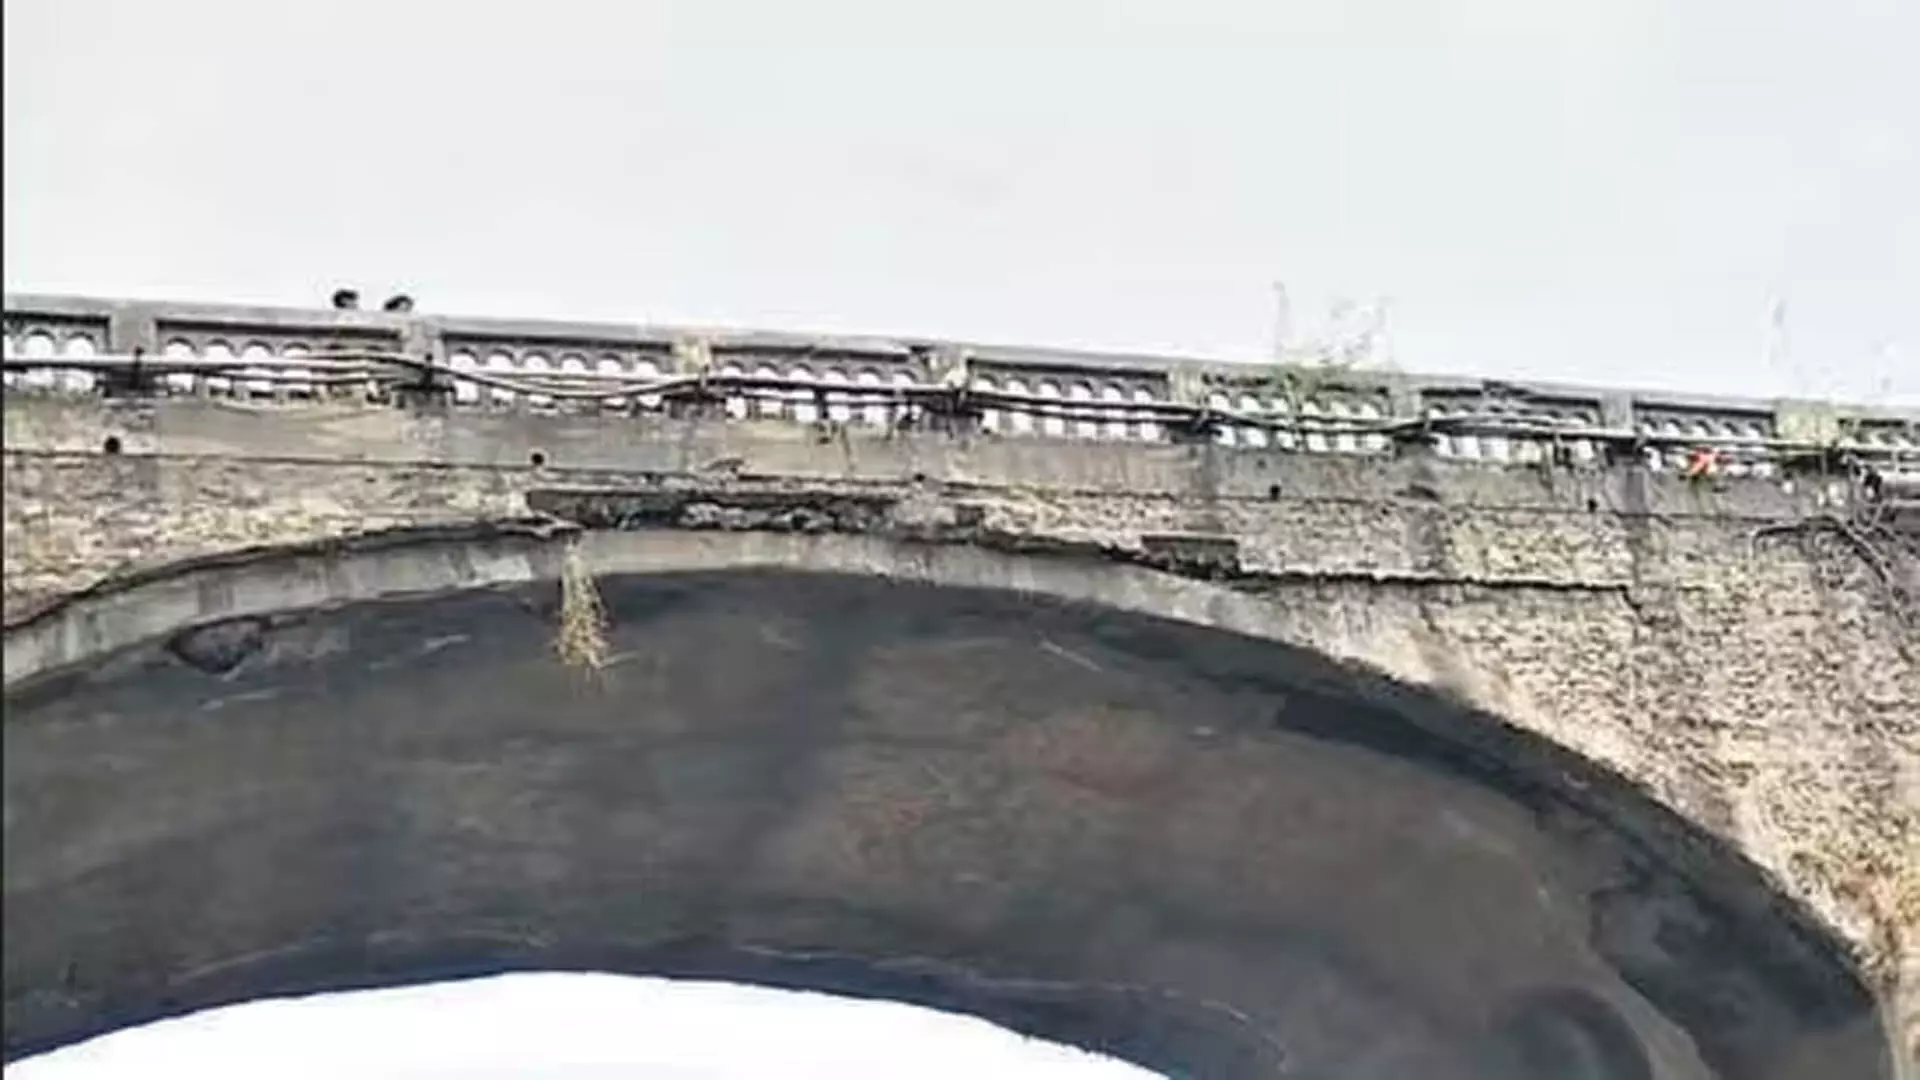 ट्रक की टक्कर से पिंजल पुल क्षतिग्रस्त होने के बाद मनोर वाडा रोड पर यातायात रुका